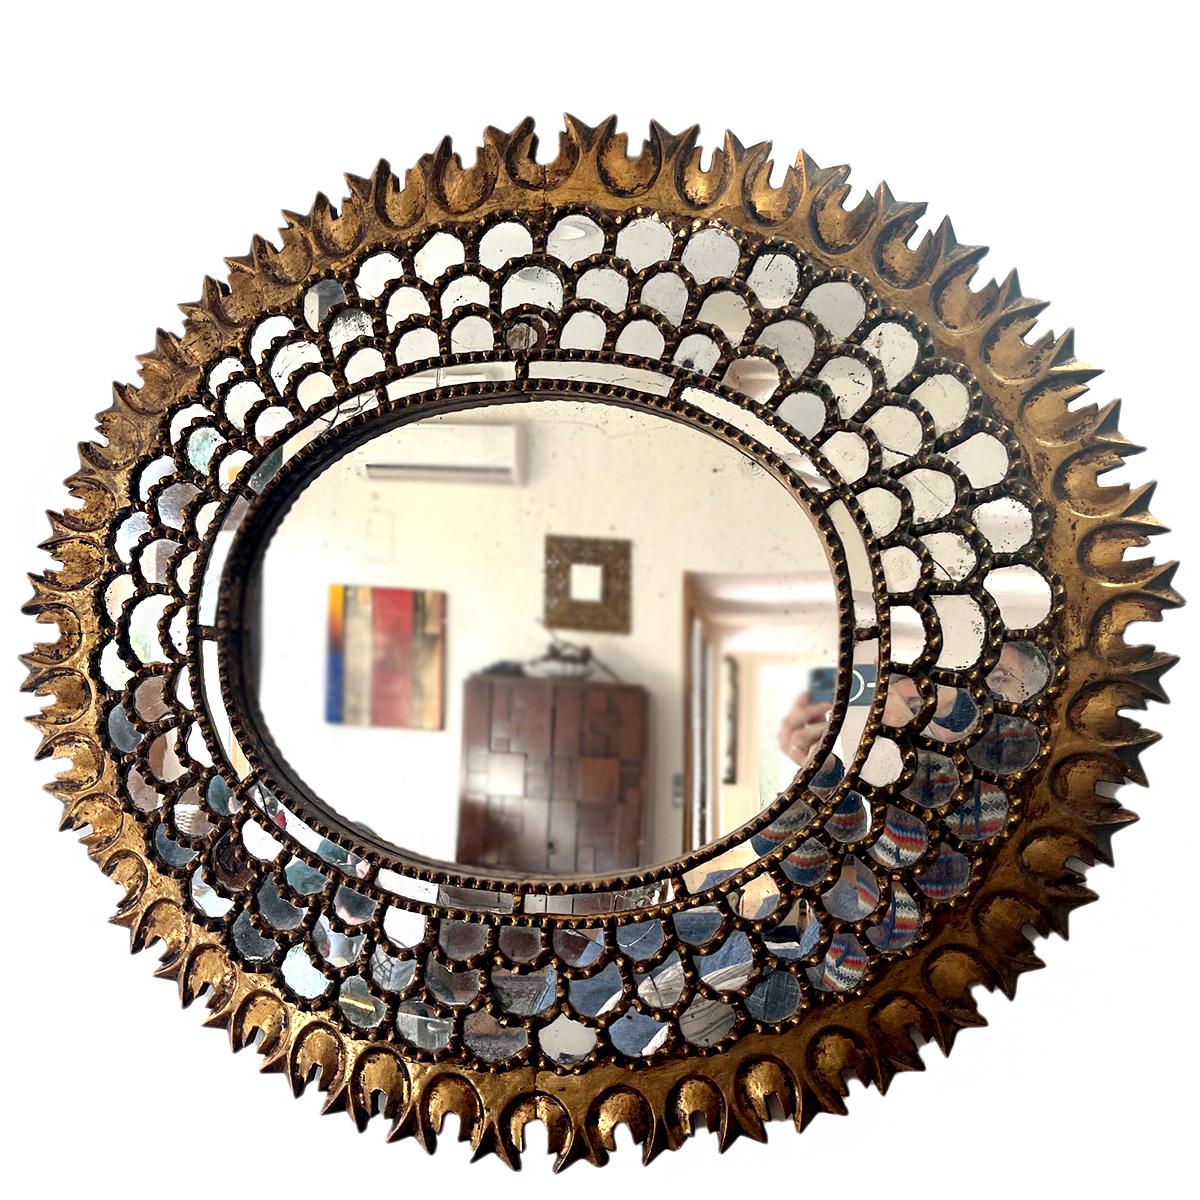  Ein großer ovaler spanischer Spiegel aus den 1920er Jahren mit Spiegeleinsätzen.

Abmessungen:
Höhe: 37